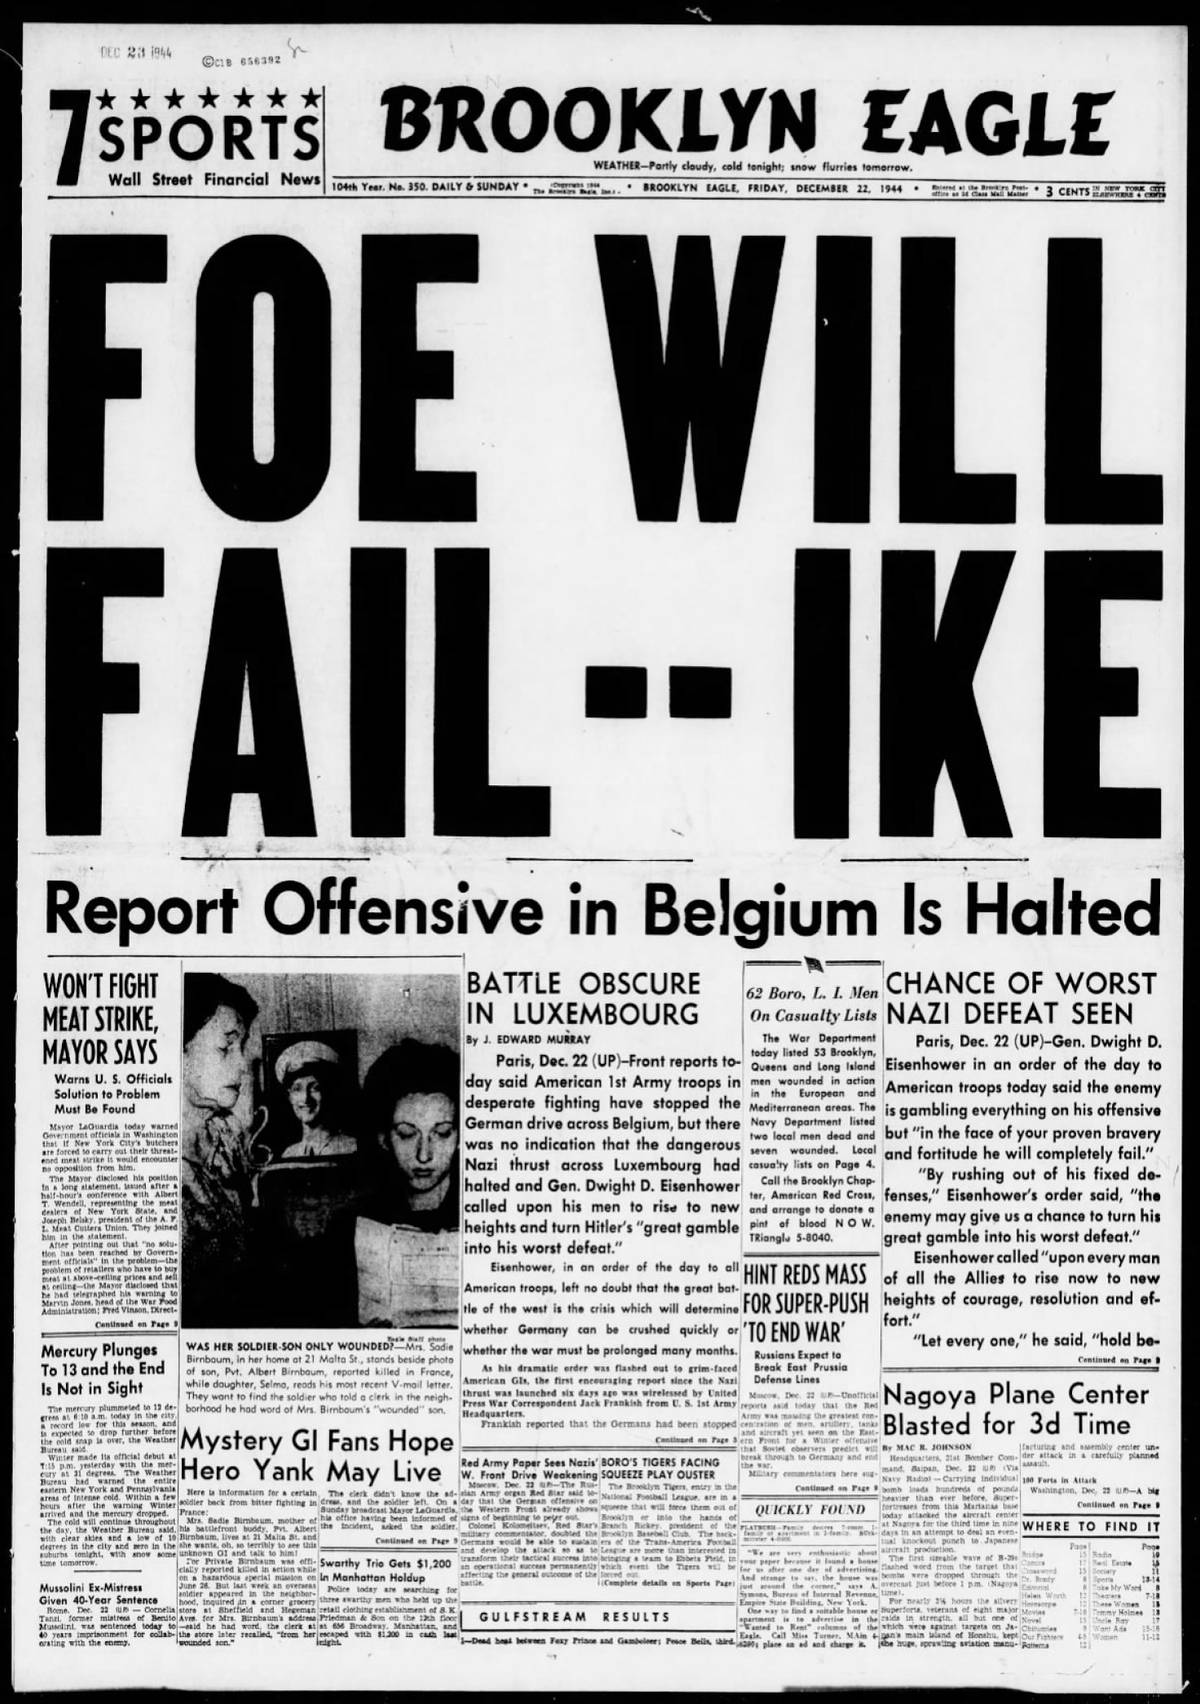 'Brooklyn Eagle,' Friday, Dec. 22, 1944